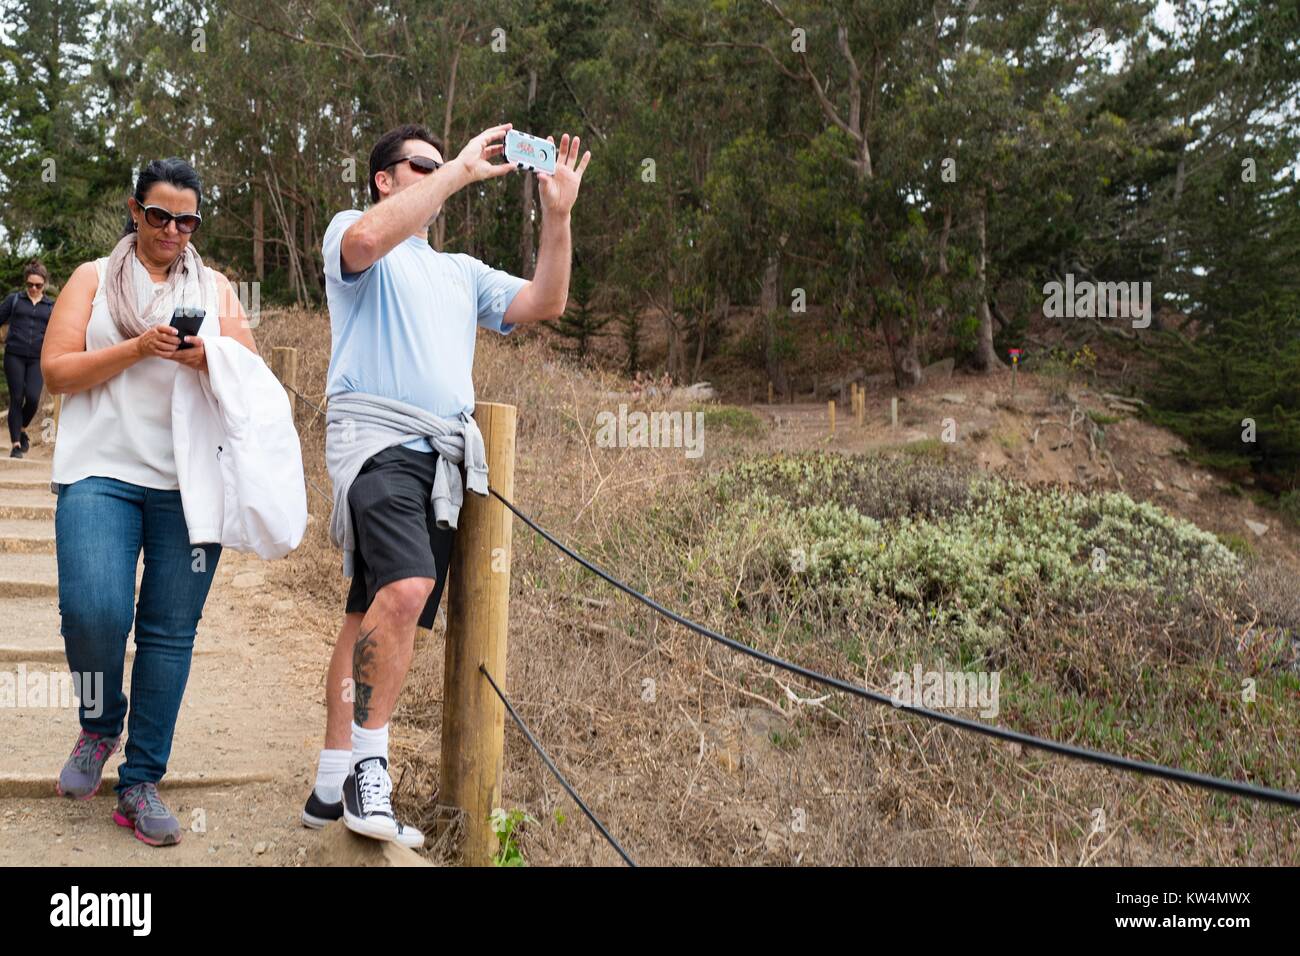 Voce maschile turistica prendendo un cellulare foto del Golden Gate mentre una femmina passeggiate turistiche passato e utilizza il suo telefono cellulare, il sentiero costiero di Lands End quartiere di San Francisco, California, 27 agosto 2016. Foto Stock